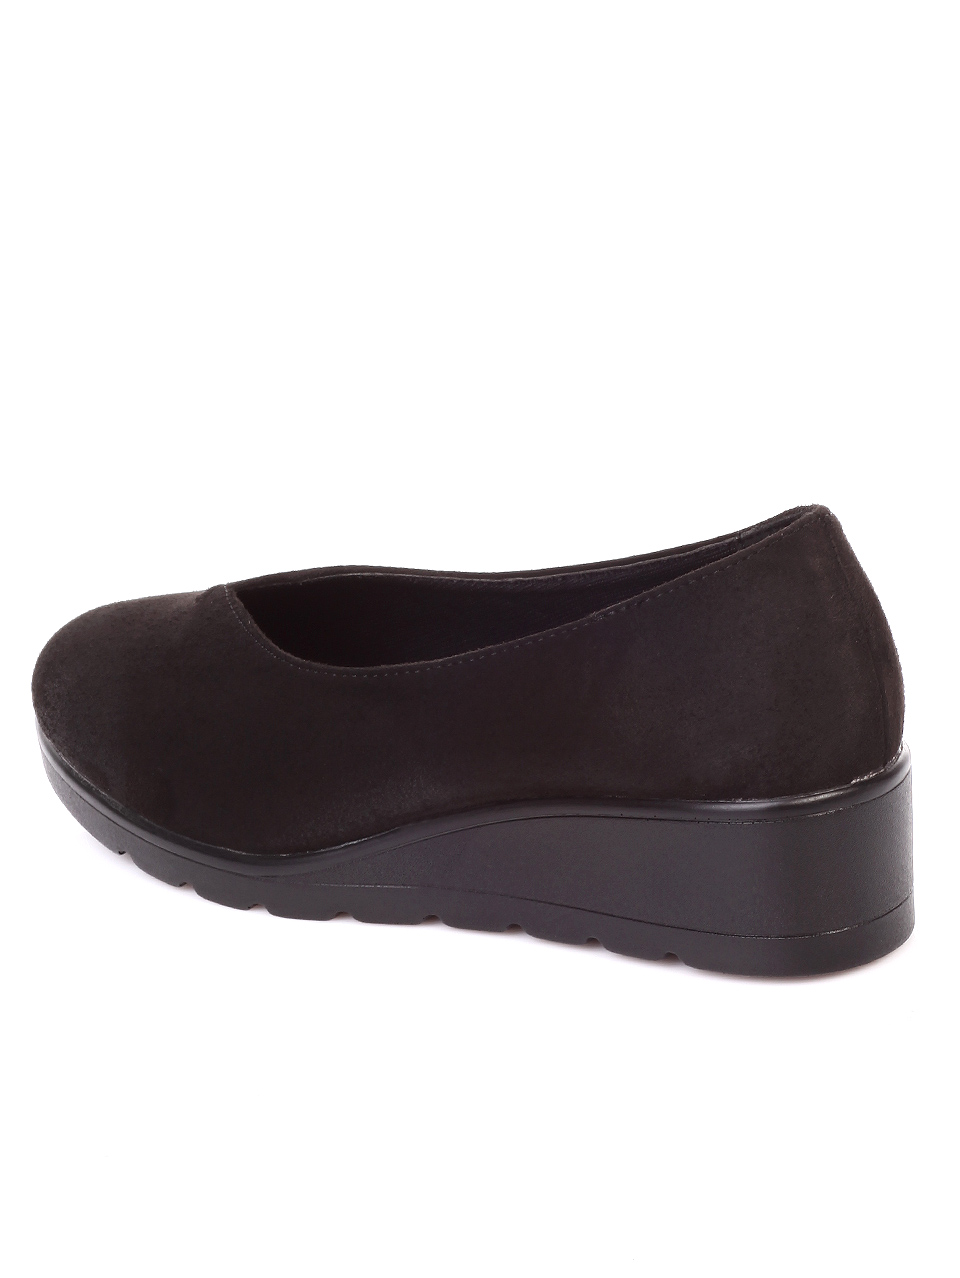 Ежедневни дамски обувки на платформа в черно 3C-19738 black